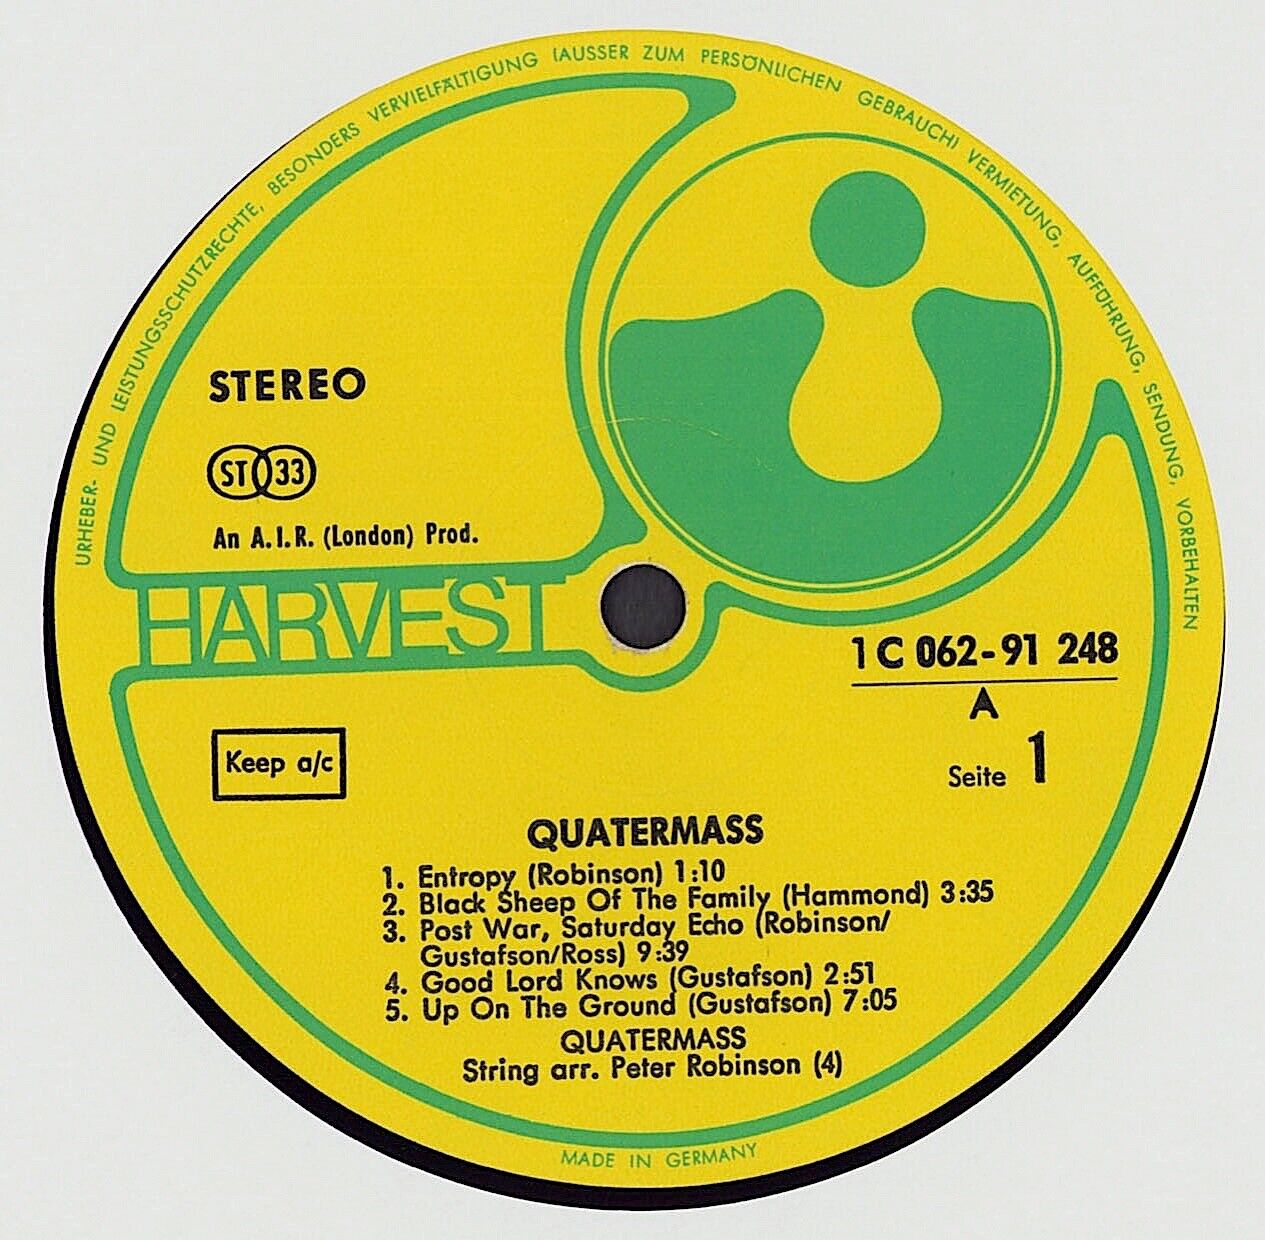 Quatermass - Quatermass Vinyl LP